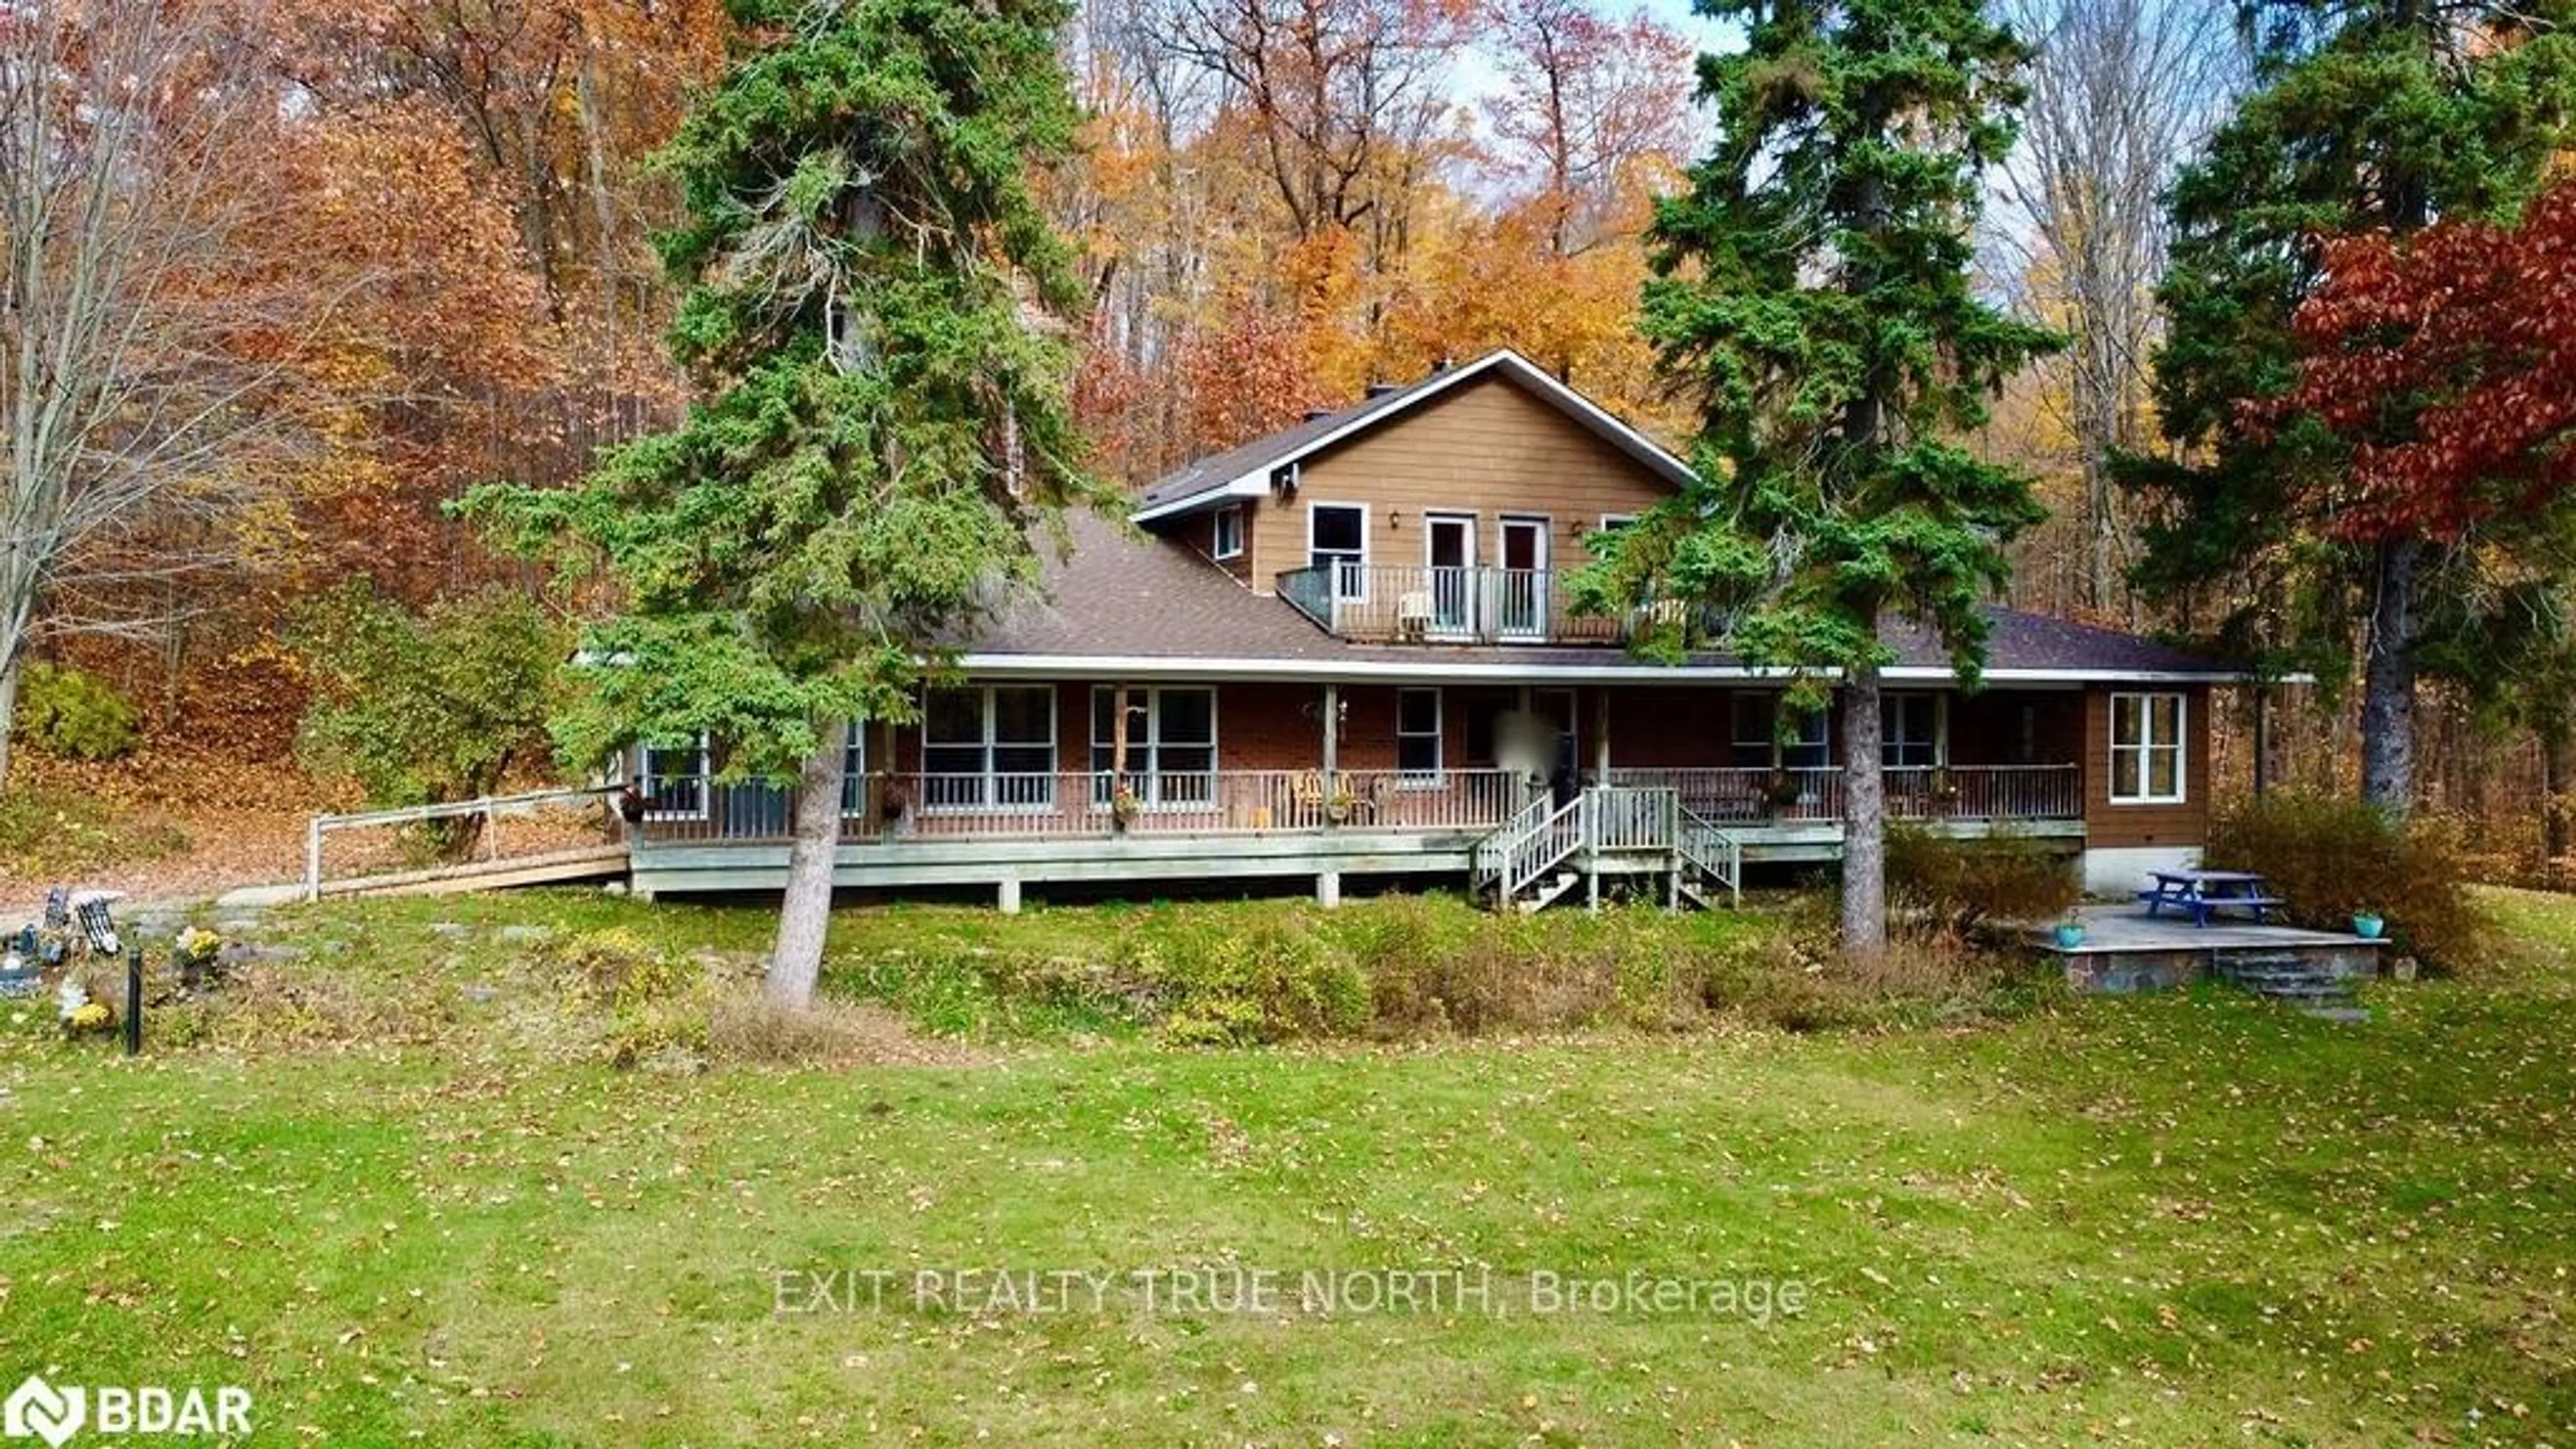 Cottage for 74 15 N Line, Oro-Medonte Ontario L3V 0H7